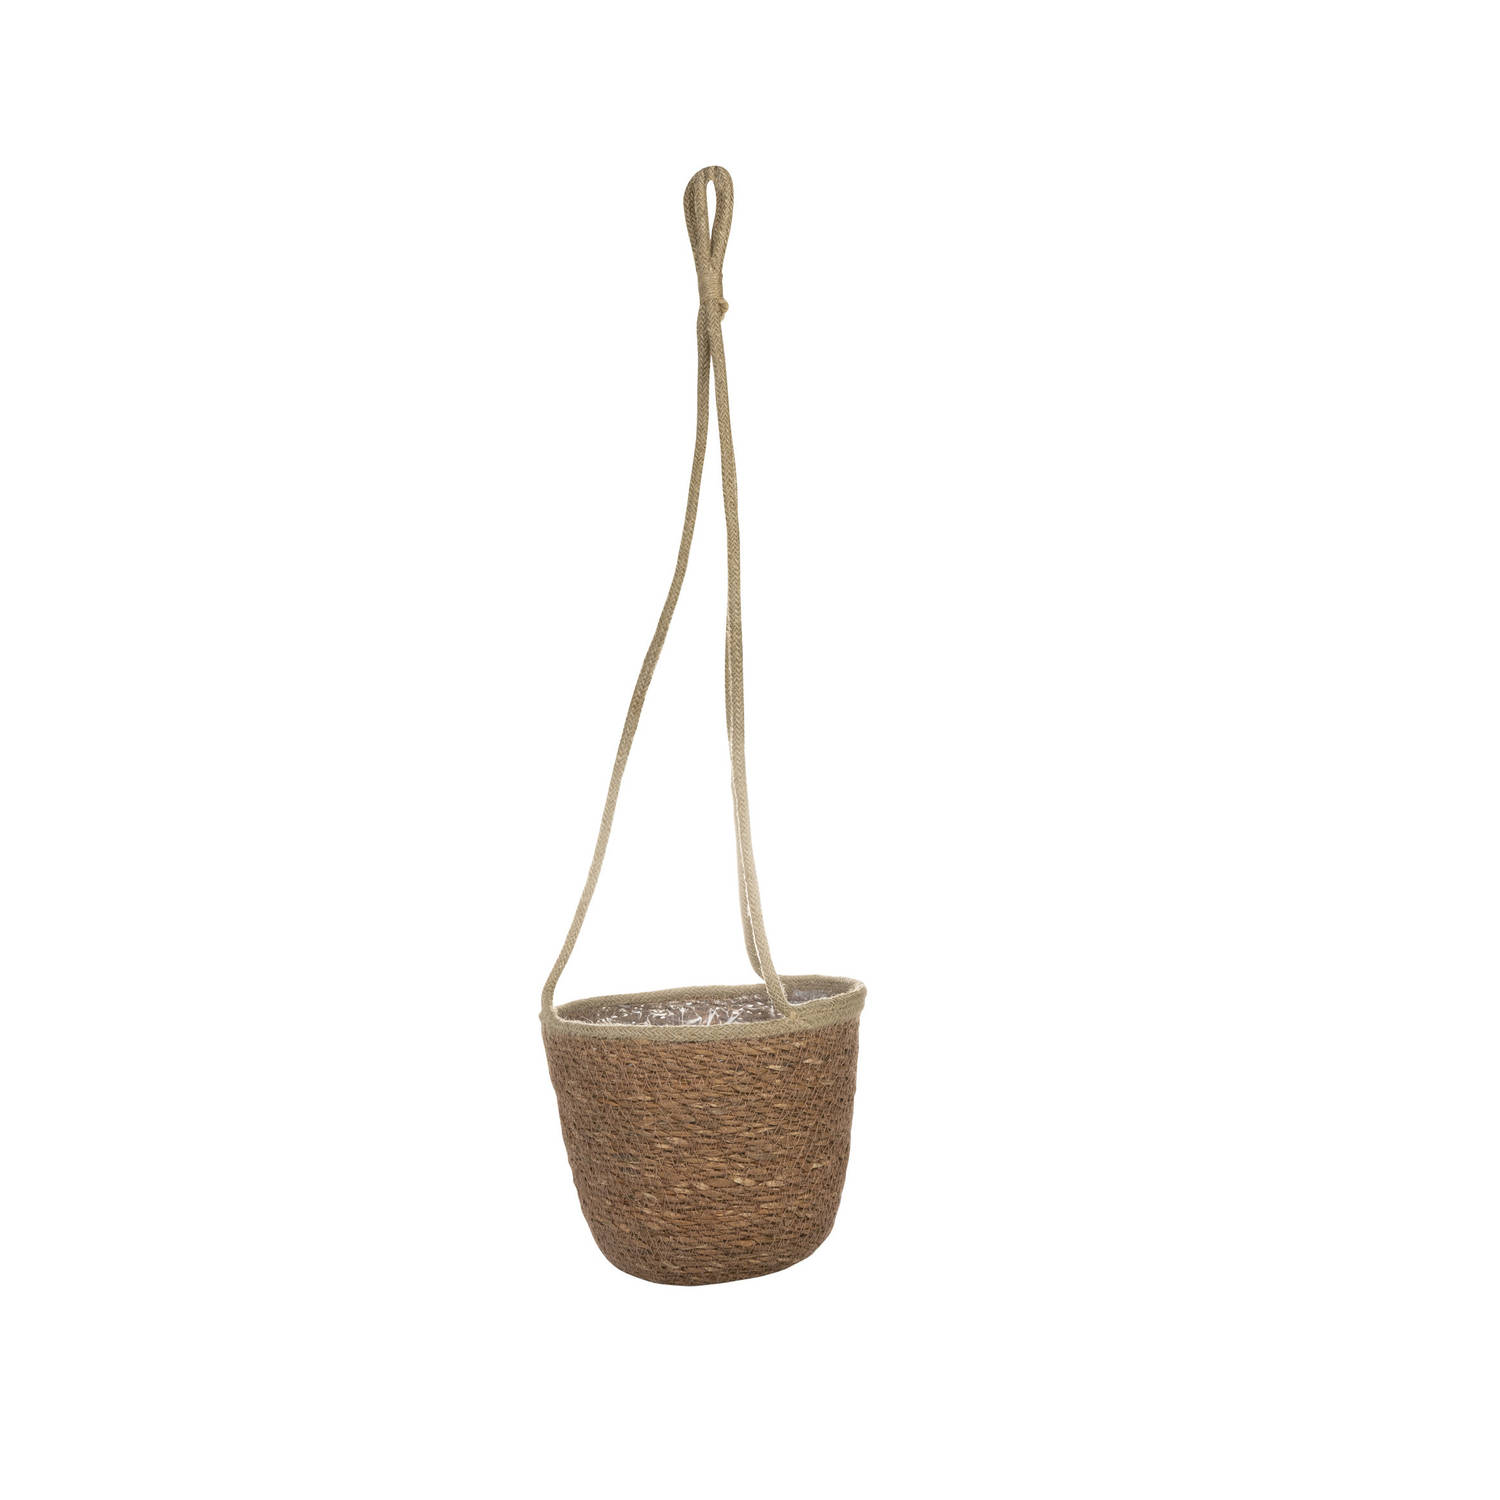 Hangende plantenpot/bloempot van jute/zeegras diameter 19 cm en hoogte 17 cm camel bruin - Plantenpotten